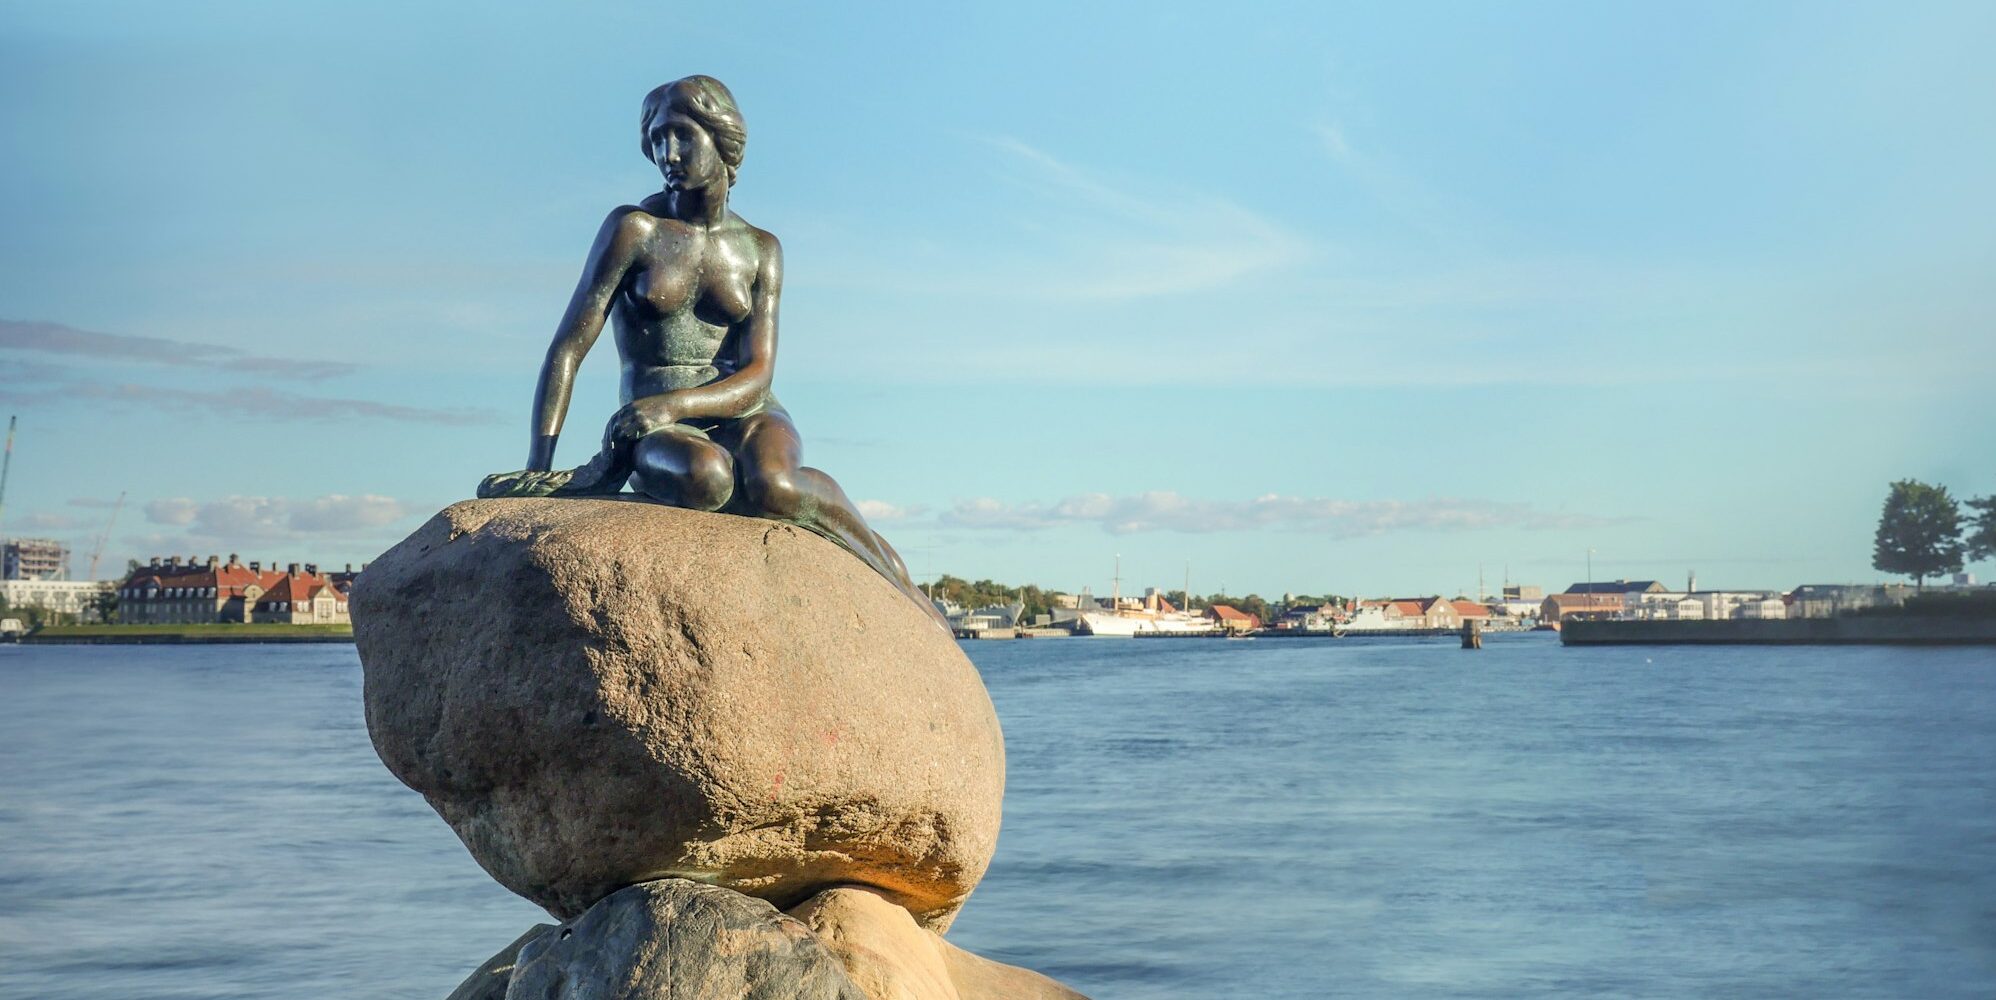 Little Mermaid statue on rock in Denmark